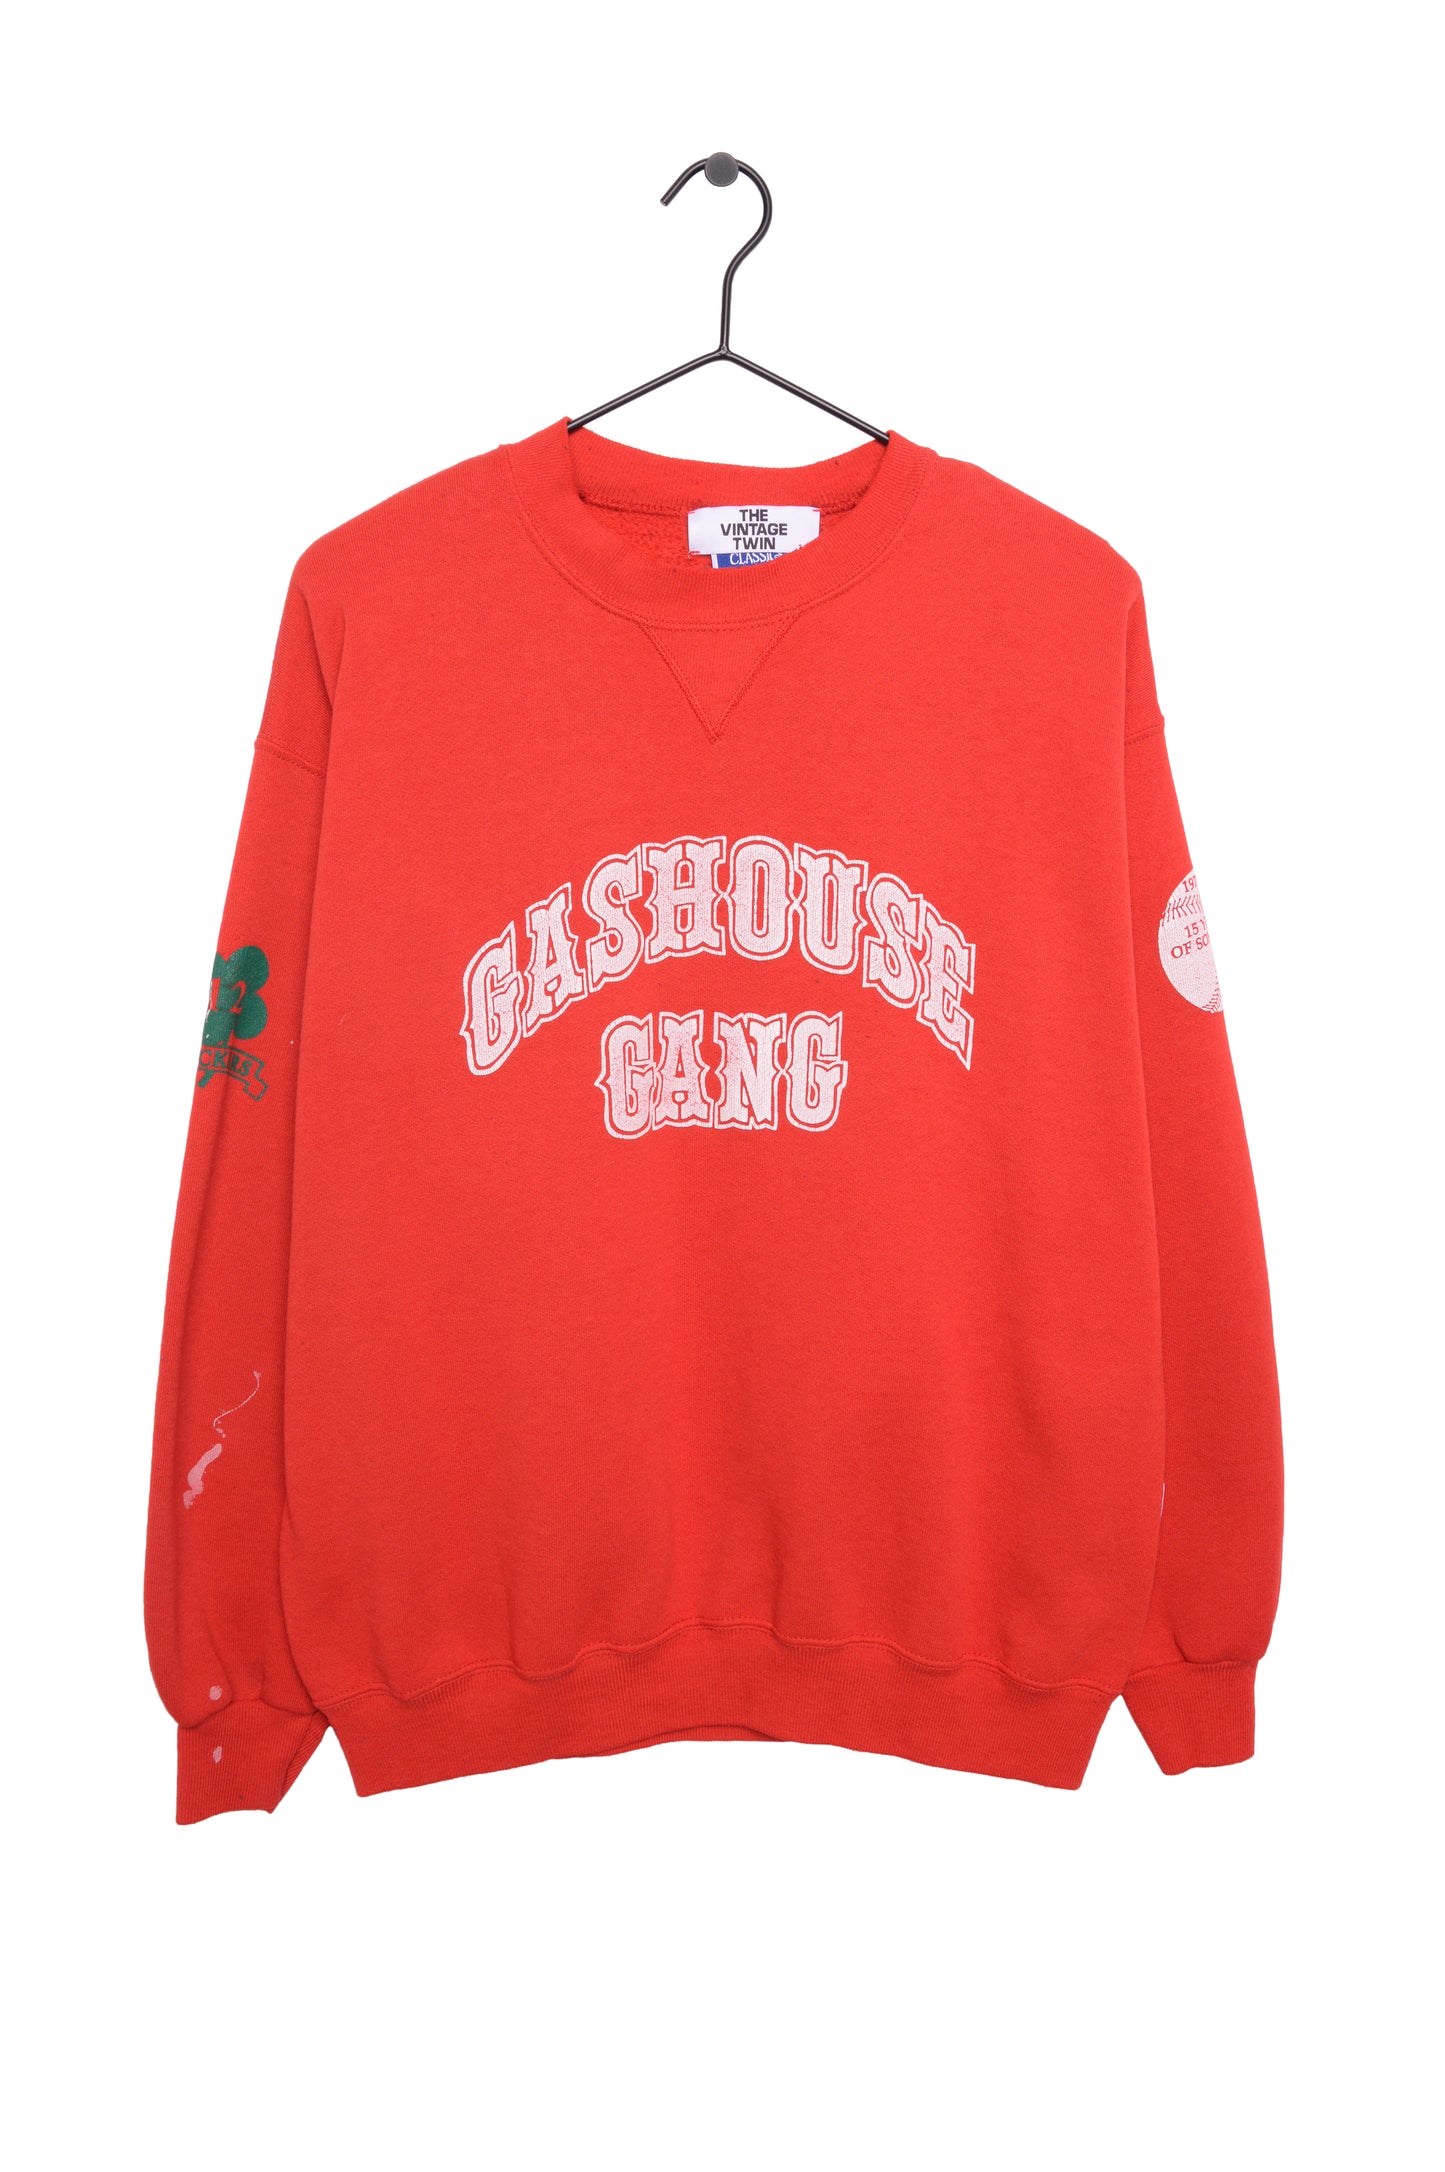 Gashouse Gang Softball Sweatshirt USA